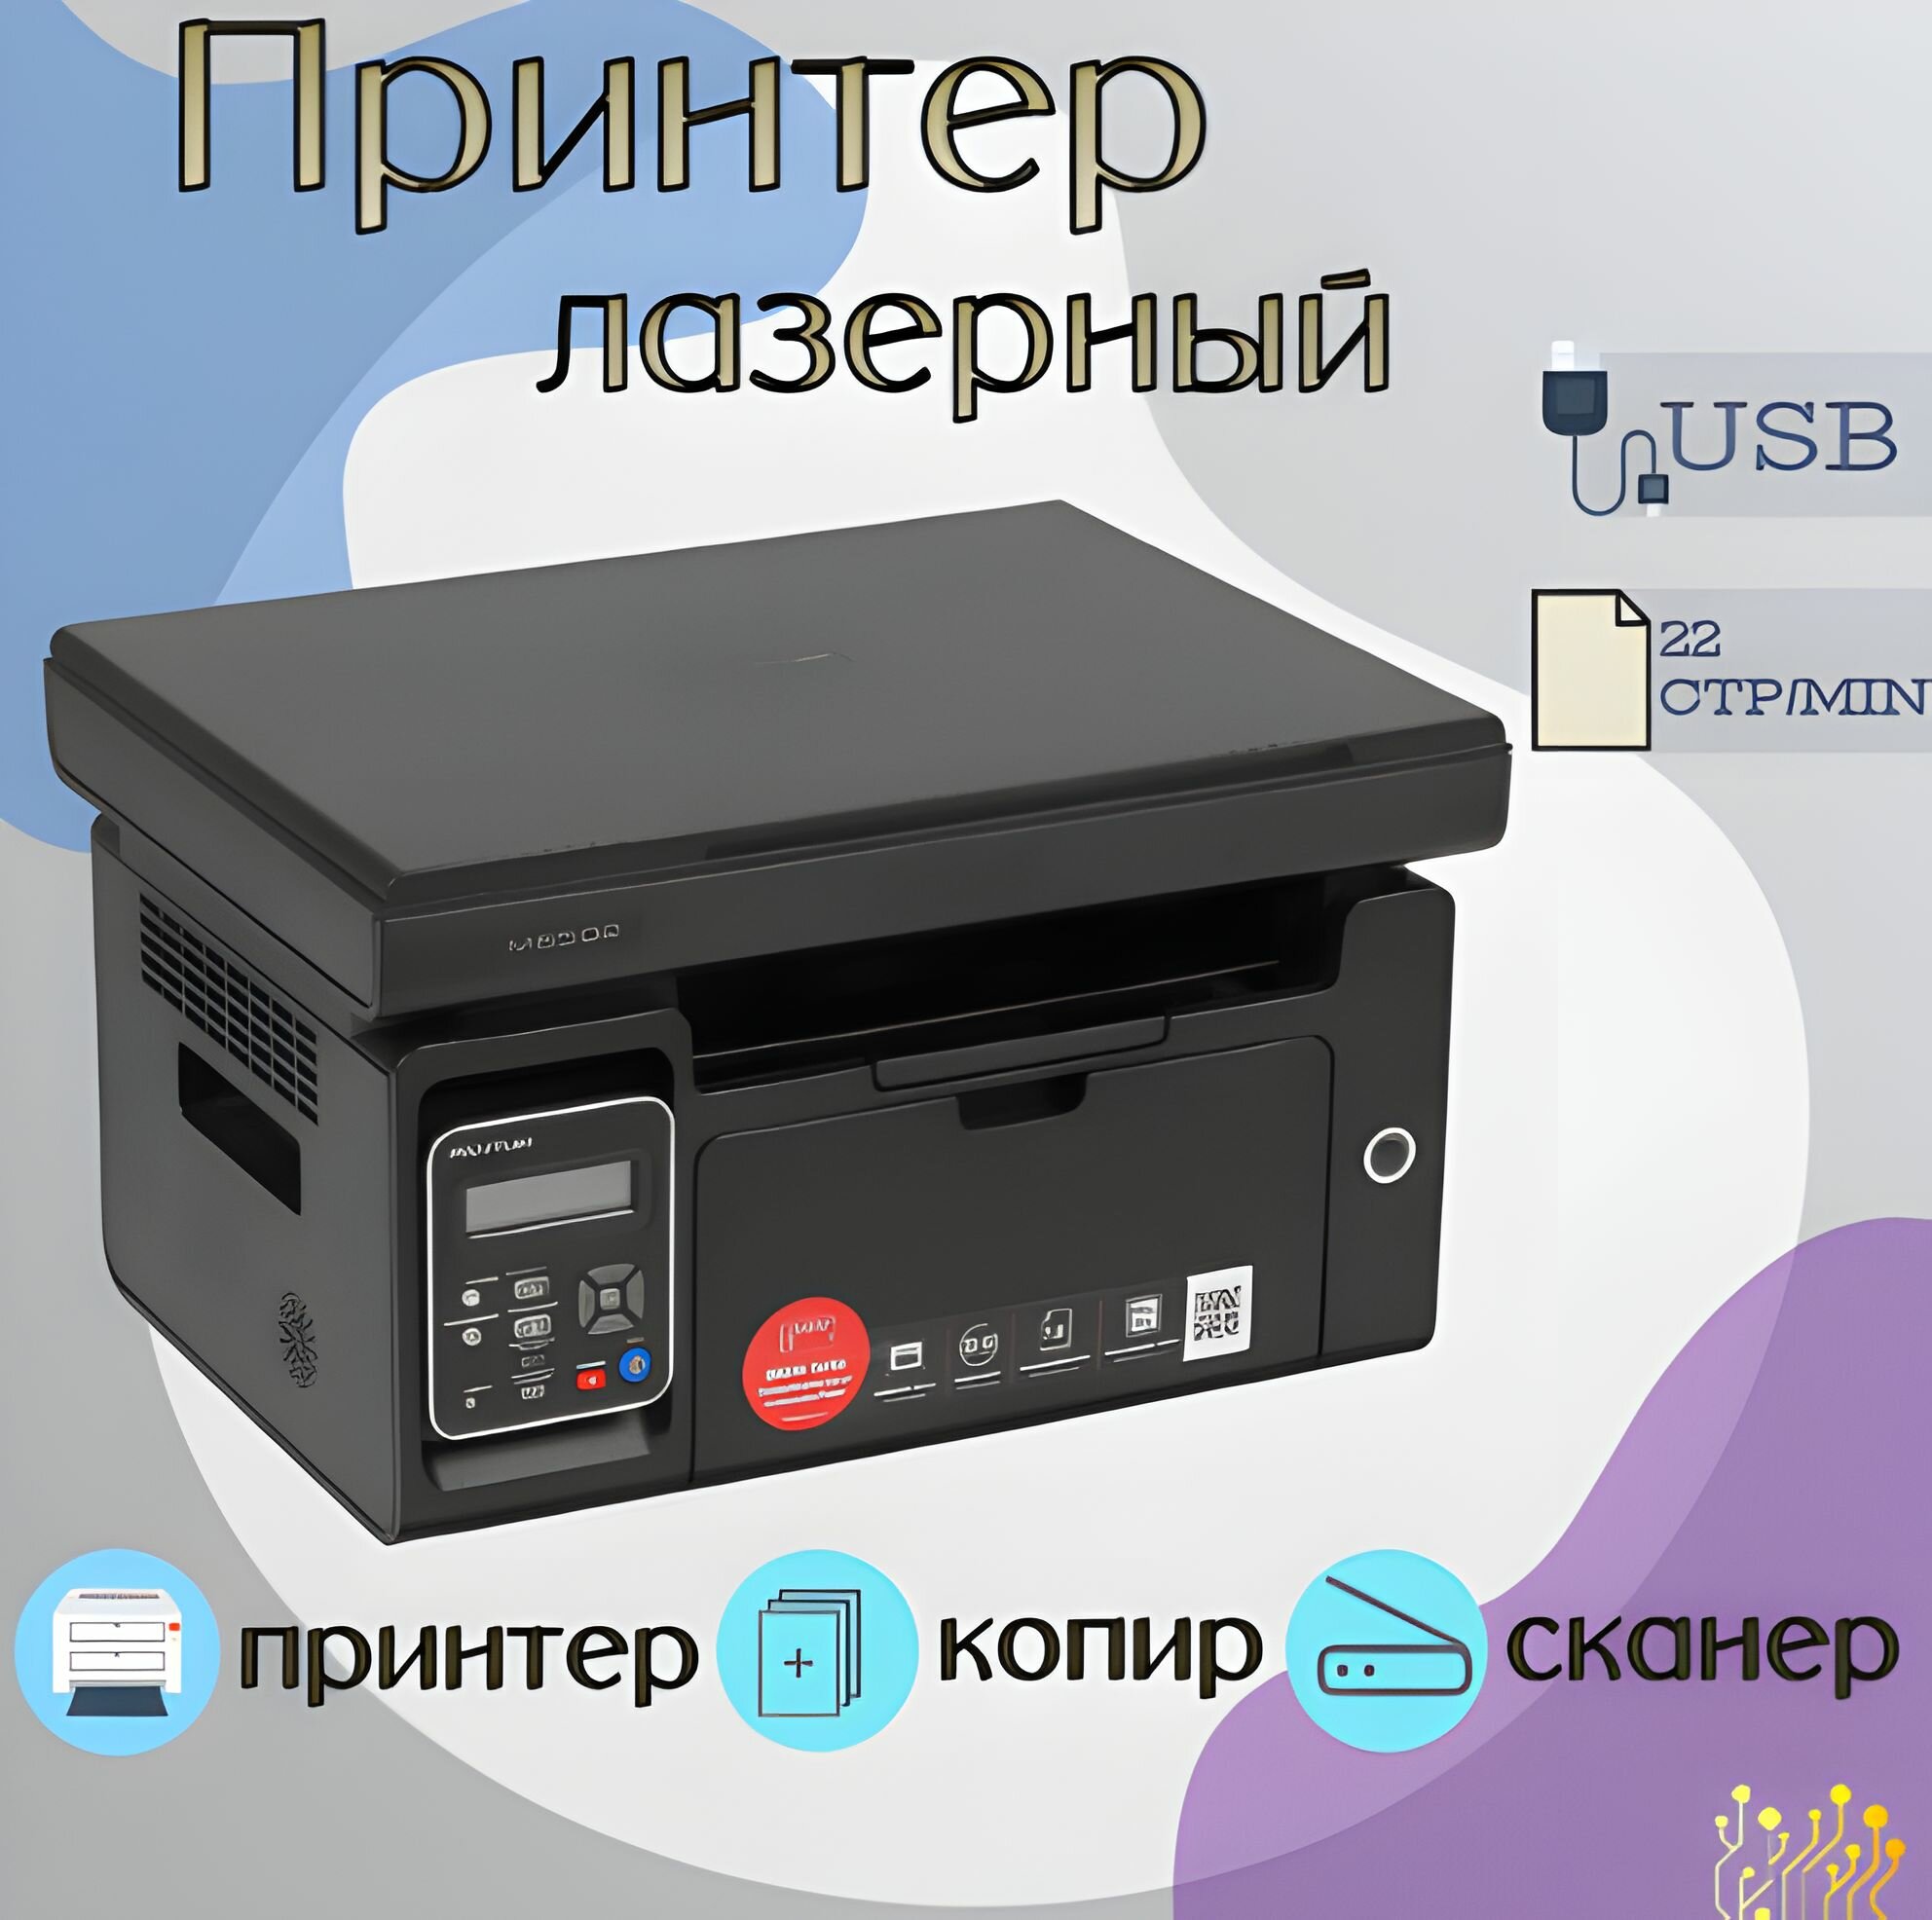 МФУ лазерное (принтер, сканер, копир), черно-белая печать, A4, 1200x1200 dpi, USB, черный, GoodsMart M6502, 1 шт.